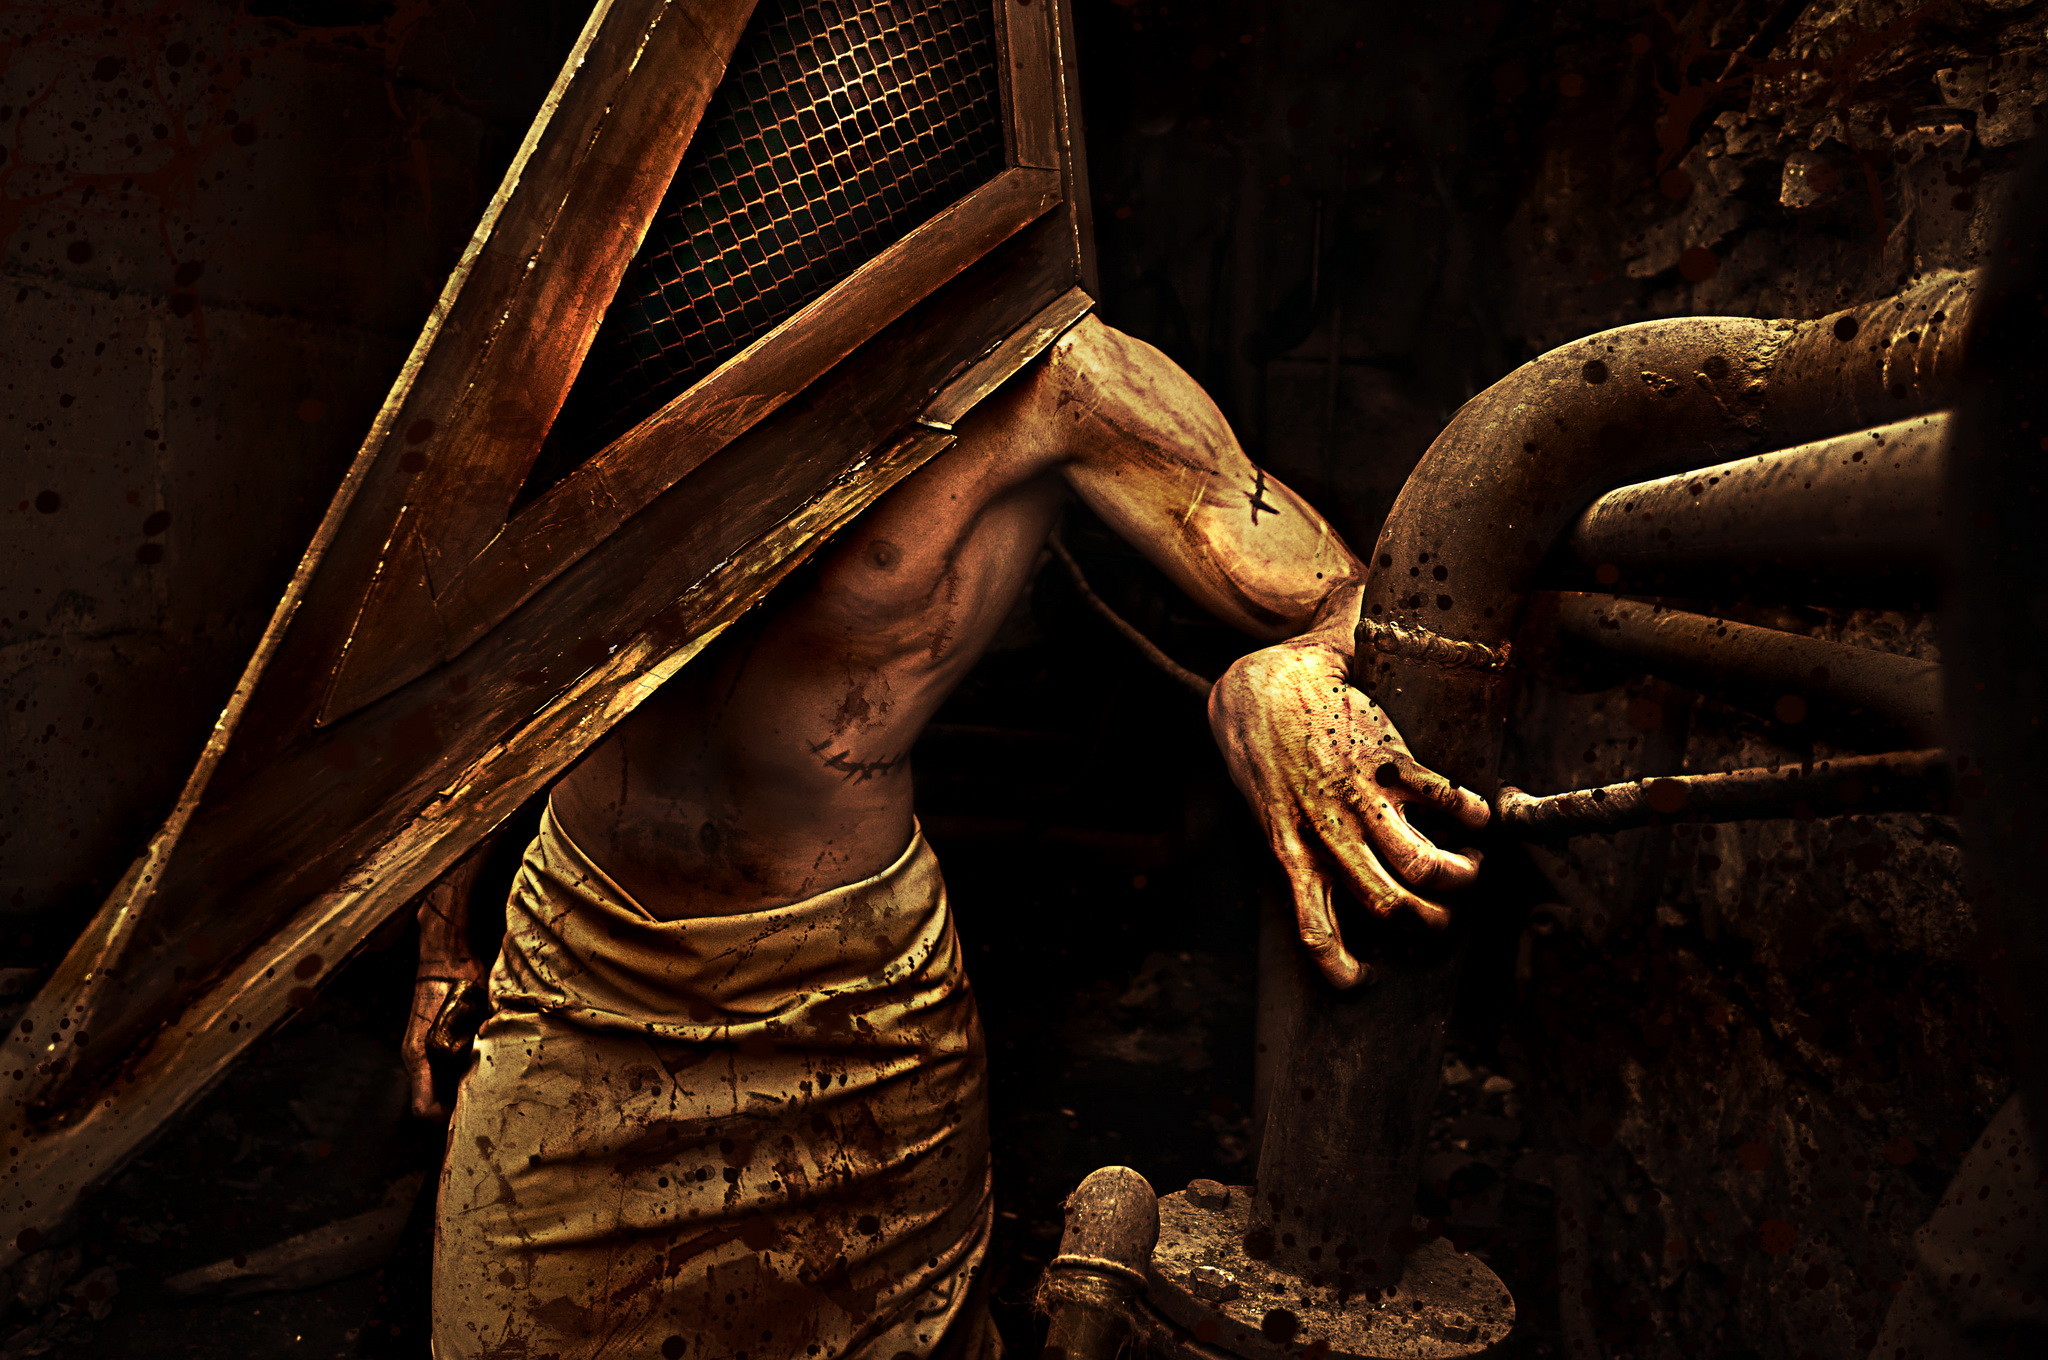 Silent Hill cosplay by Darya Polyanskaya AnimA89. Cosplayer Vasilij Manaev